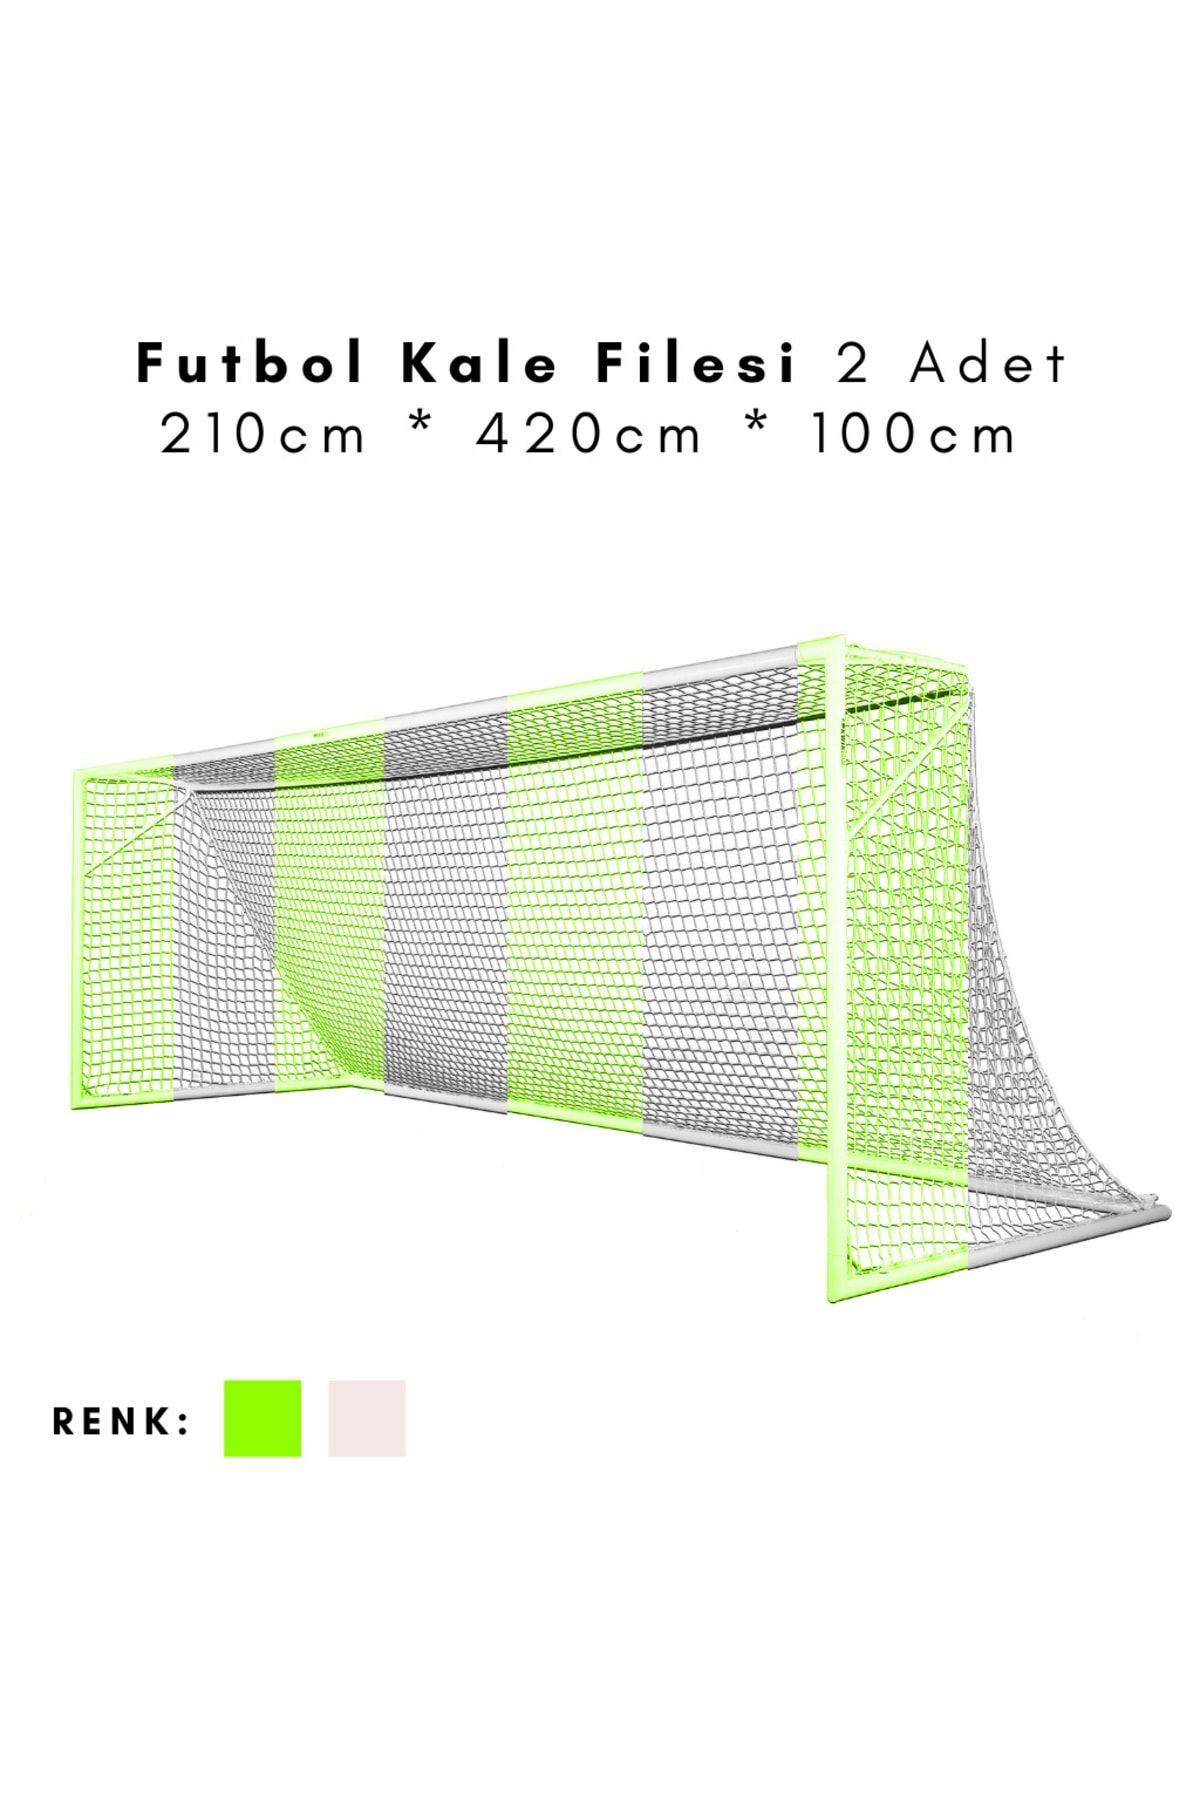 ÖZBEK Futbol Kale Filesi - Halı Saha Kale Ağı 210 * 420 * 100cm (2 Adet File)